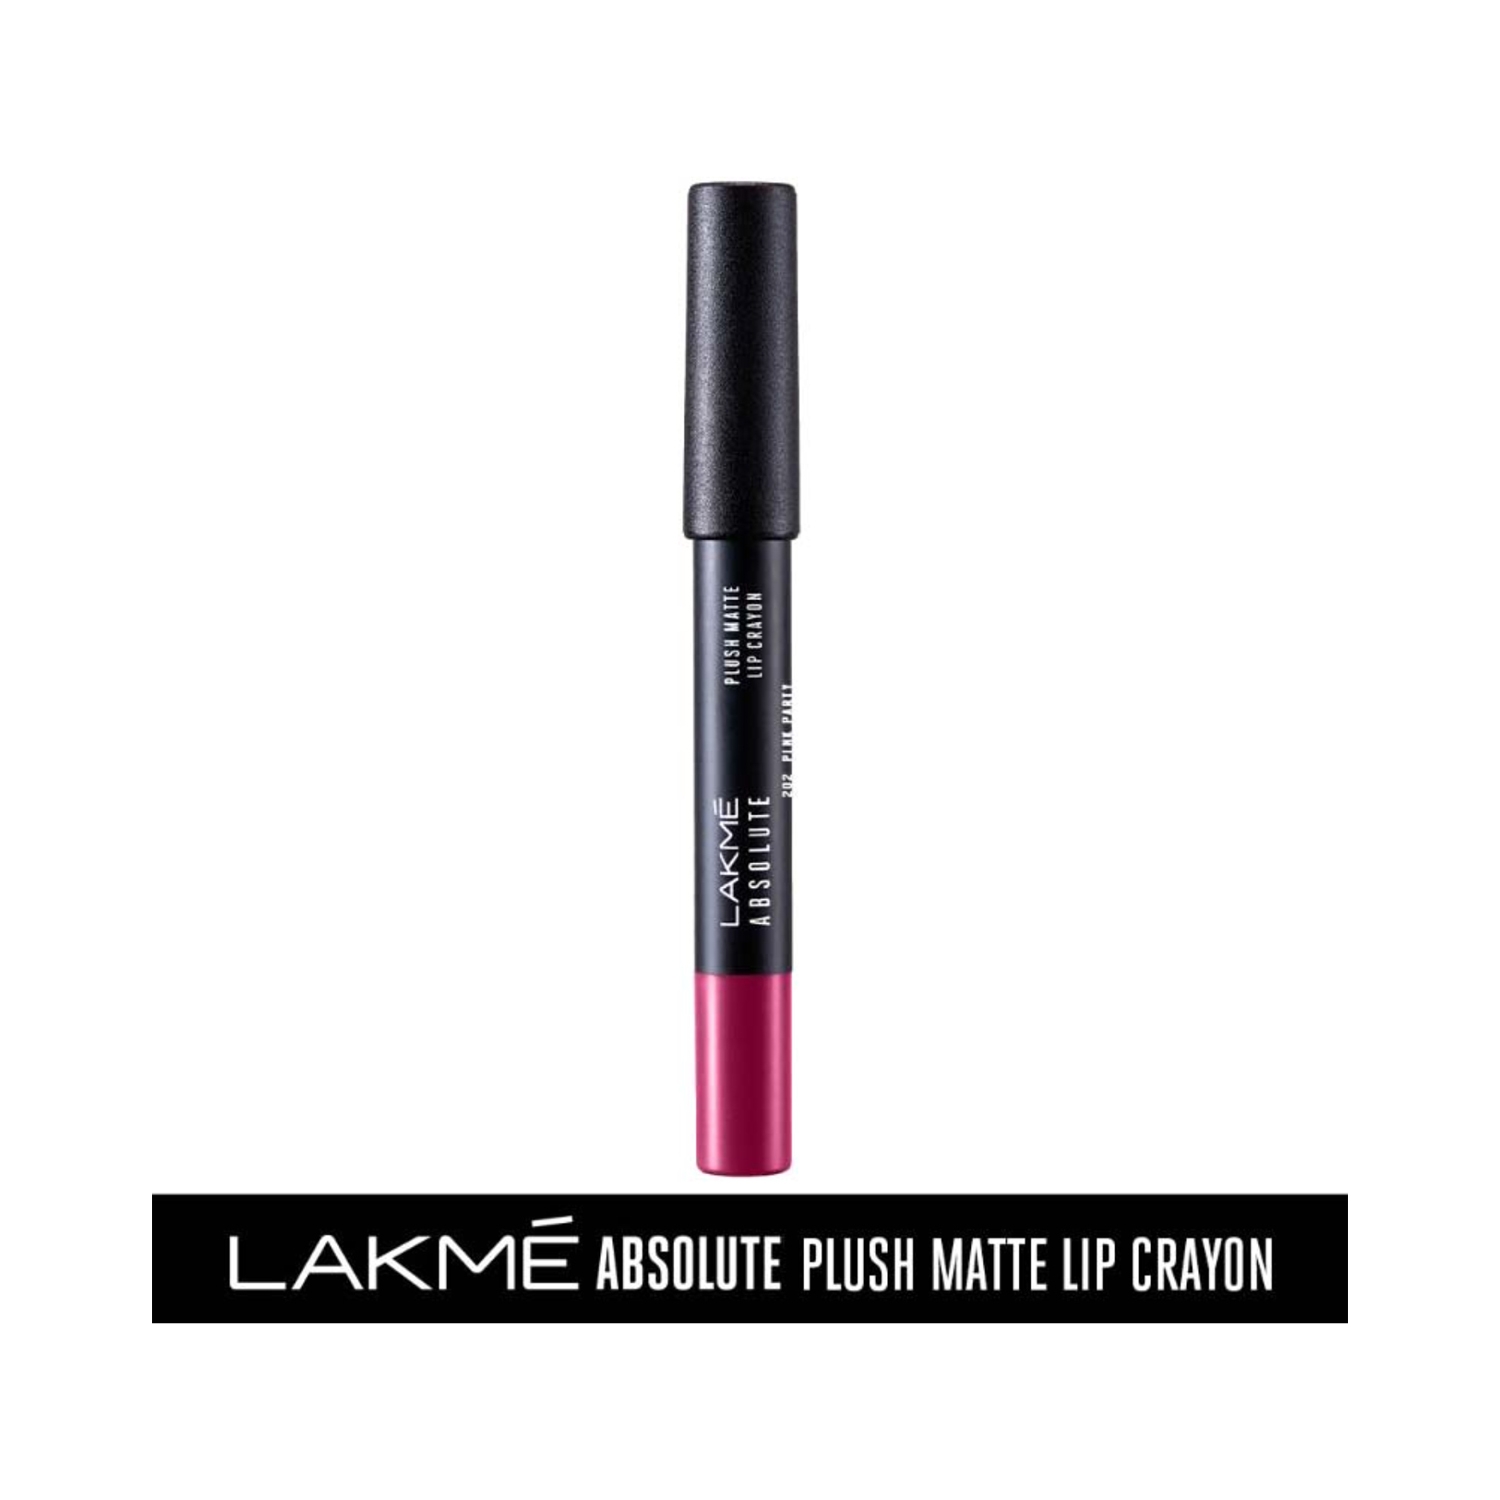 Lakme | Lakme Absolute Plush Matte Lip Crayon - 202 Pink Party (2.8g)